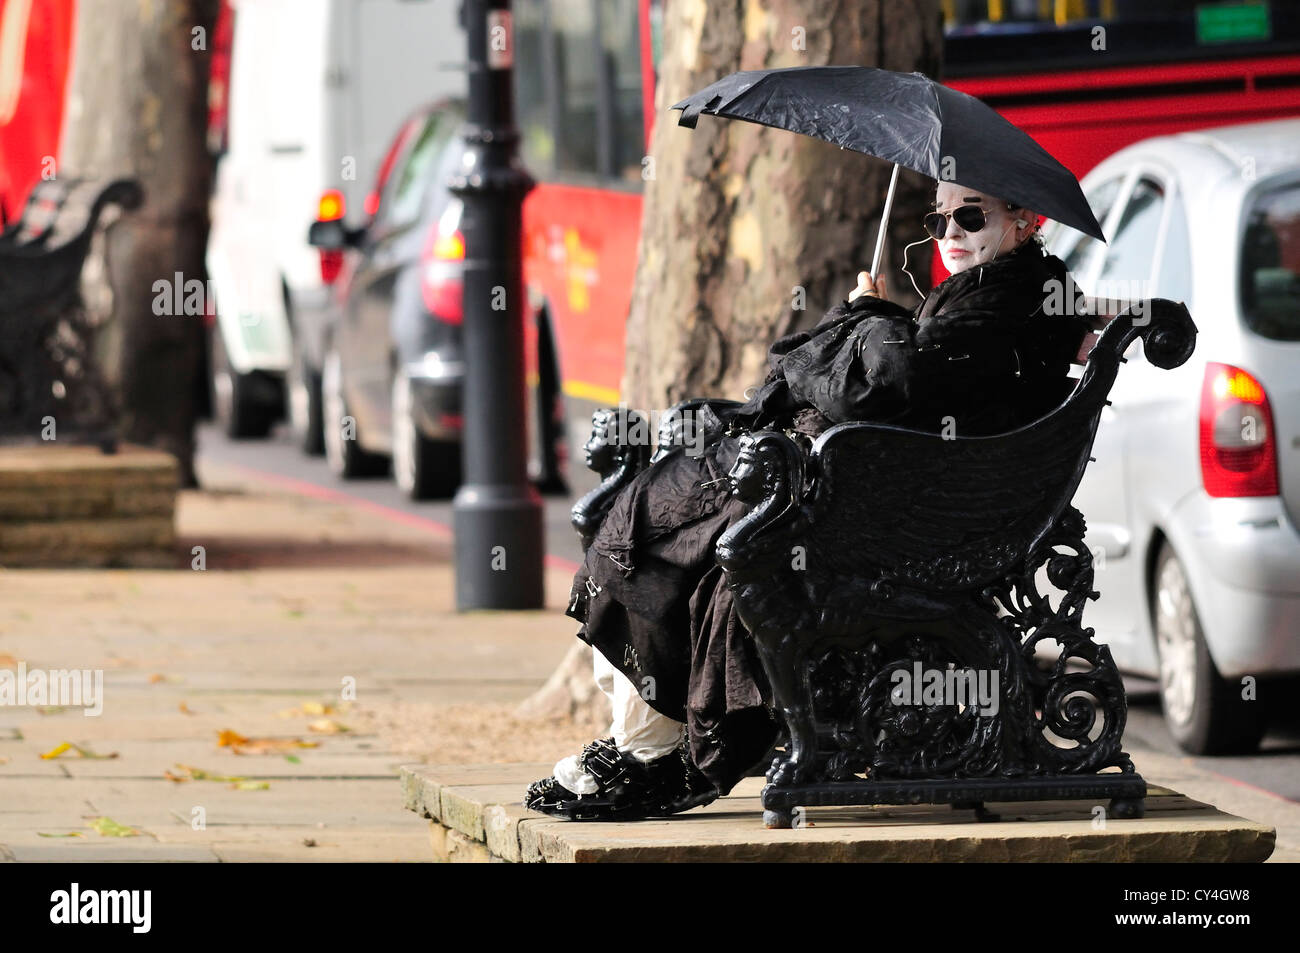 Londra, Inghilterra, Regno Unito. L'uomo vestito di nero con faccia bianca e coperti di spine di sicurezza, con un ombrello in una giornata di sole Foto Stock